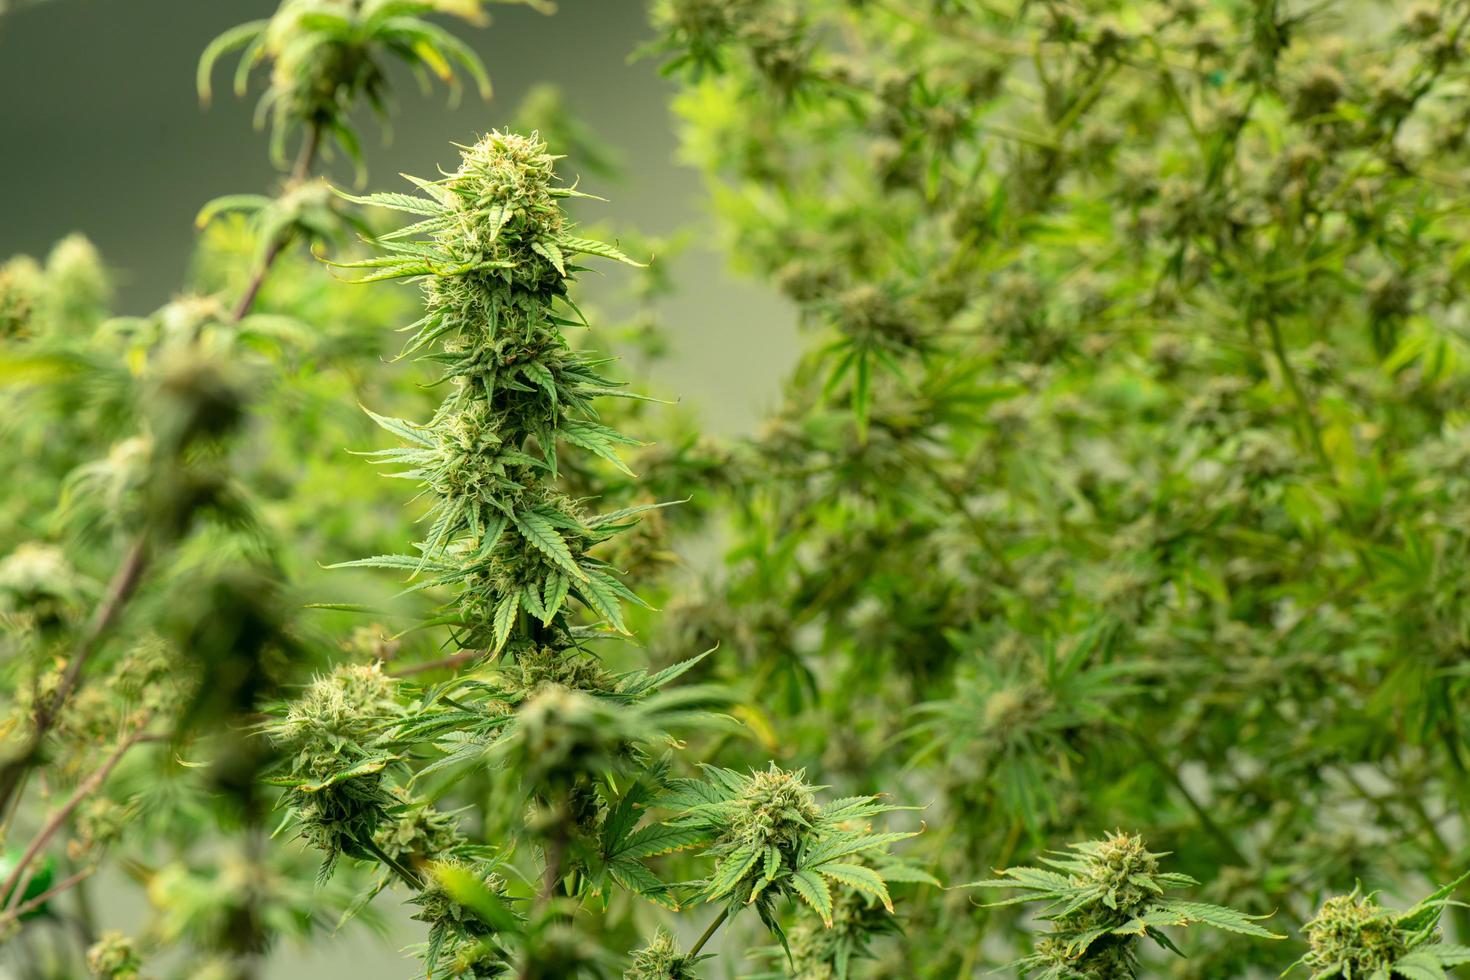 florescendo cannabis pronta para ser usada para extração em vários produtos médicos e alimentos ou bebidas até mesmo para entretenimento. foto